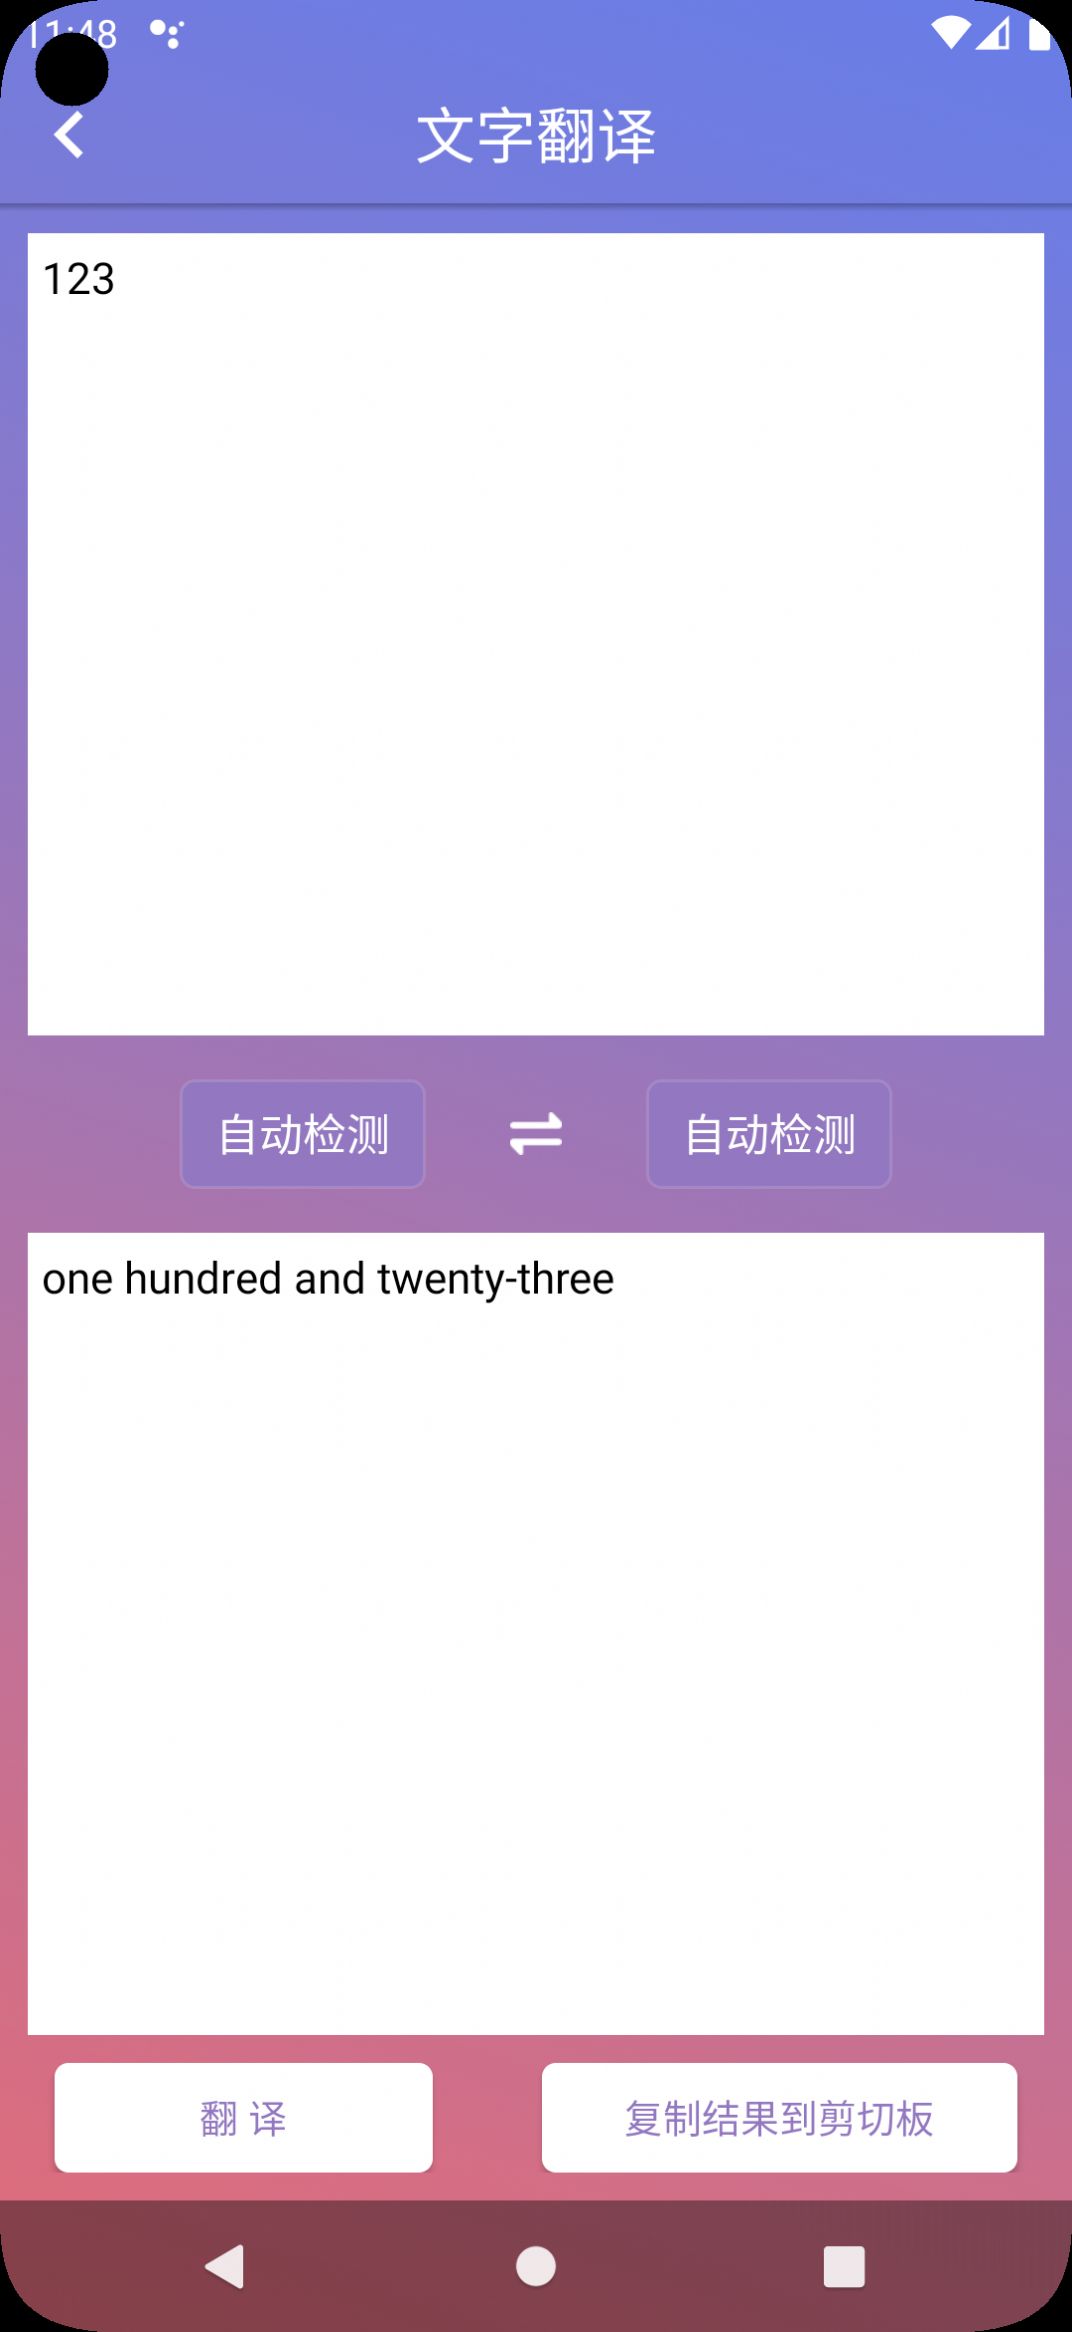 国昂翻译软件下载app